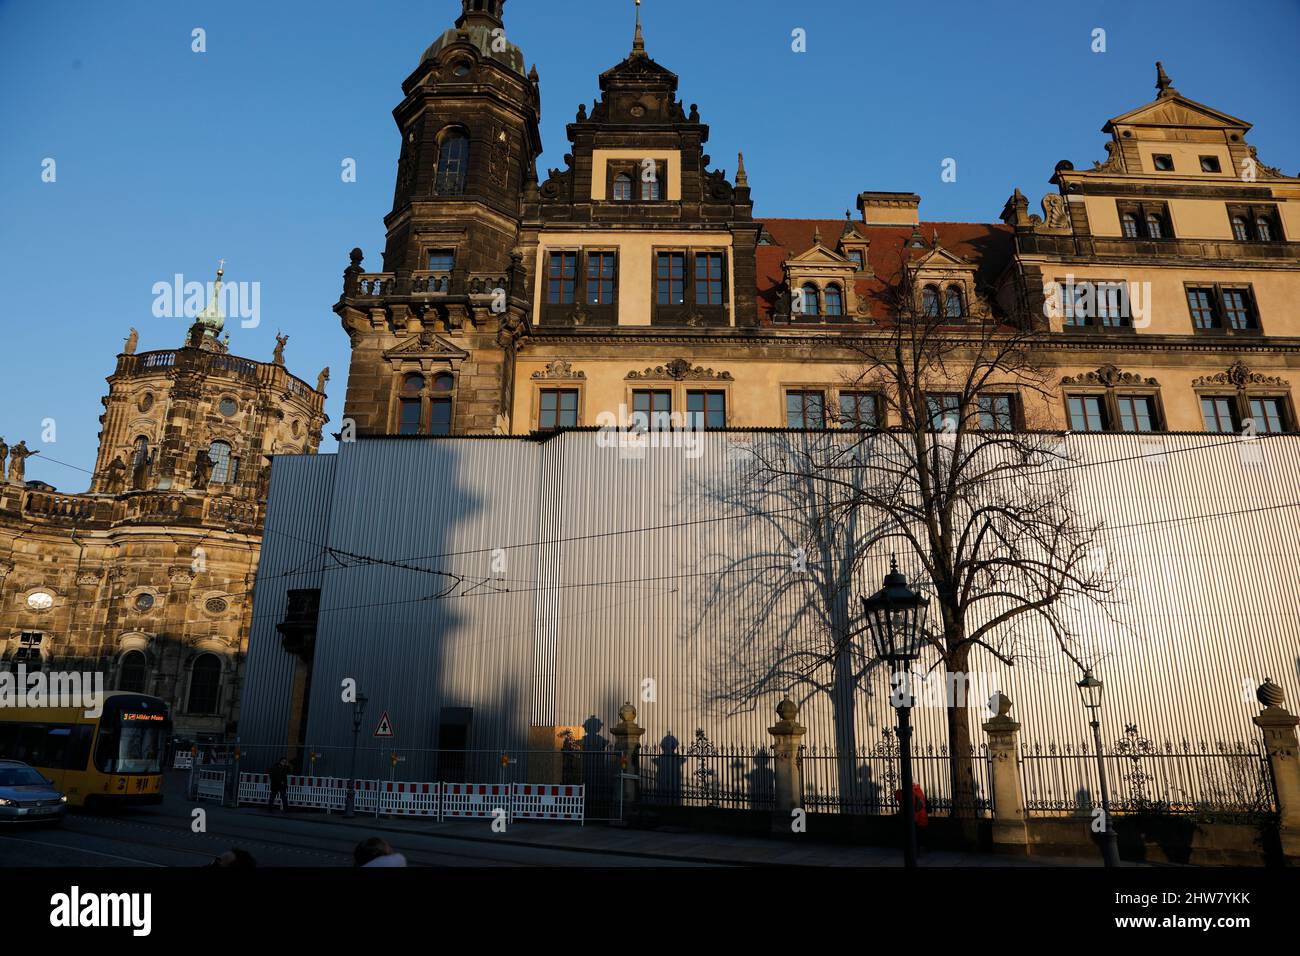 GRÜNES GEWÖLBE. Residenzschloss in Dresden gegen Juwelendiebe einbruchsicher gemacht.Hinter einer Blechverkleidung am Residenzschloss laufen Bauarbeit Stock Photo